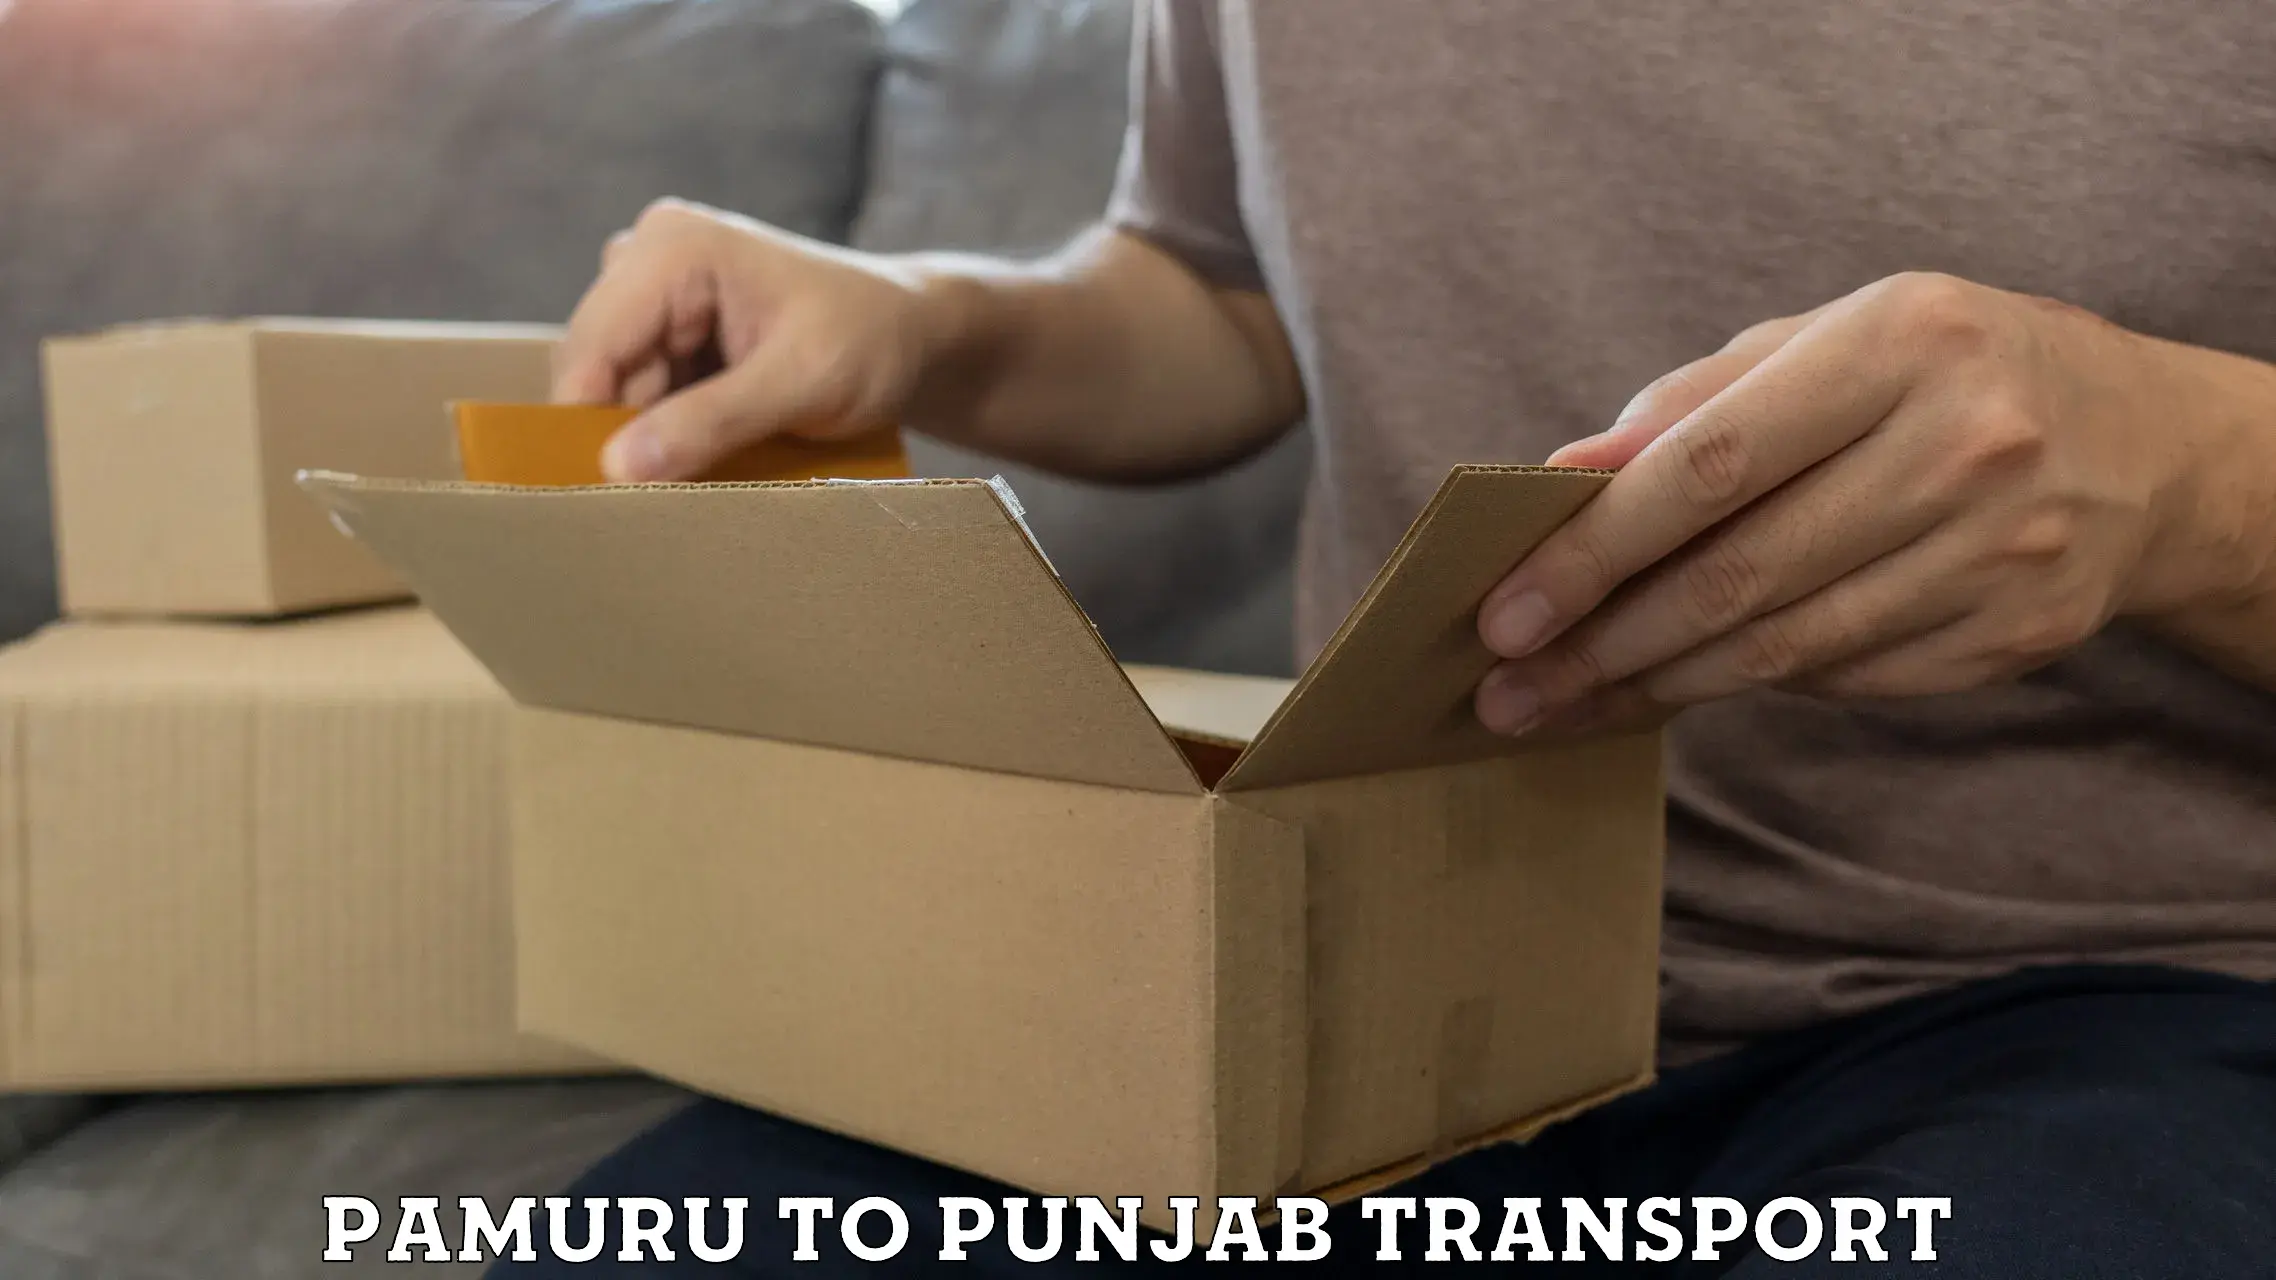 Furniture transport service Pamuru to Patiala